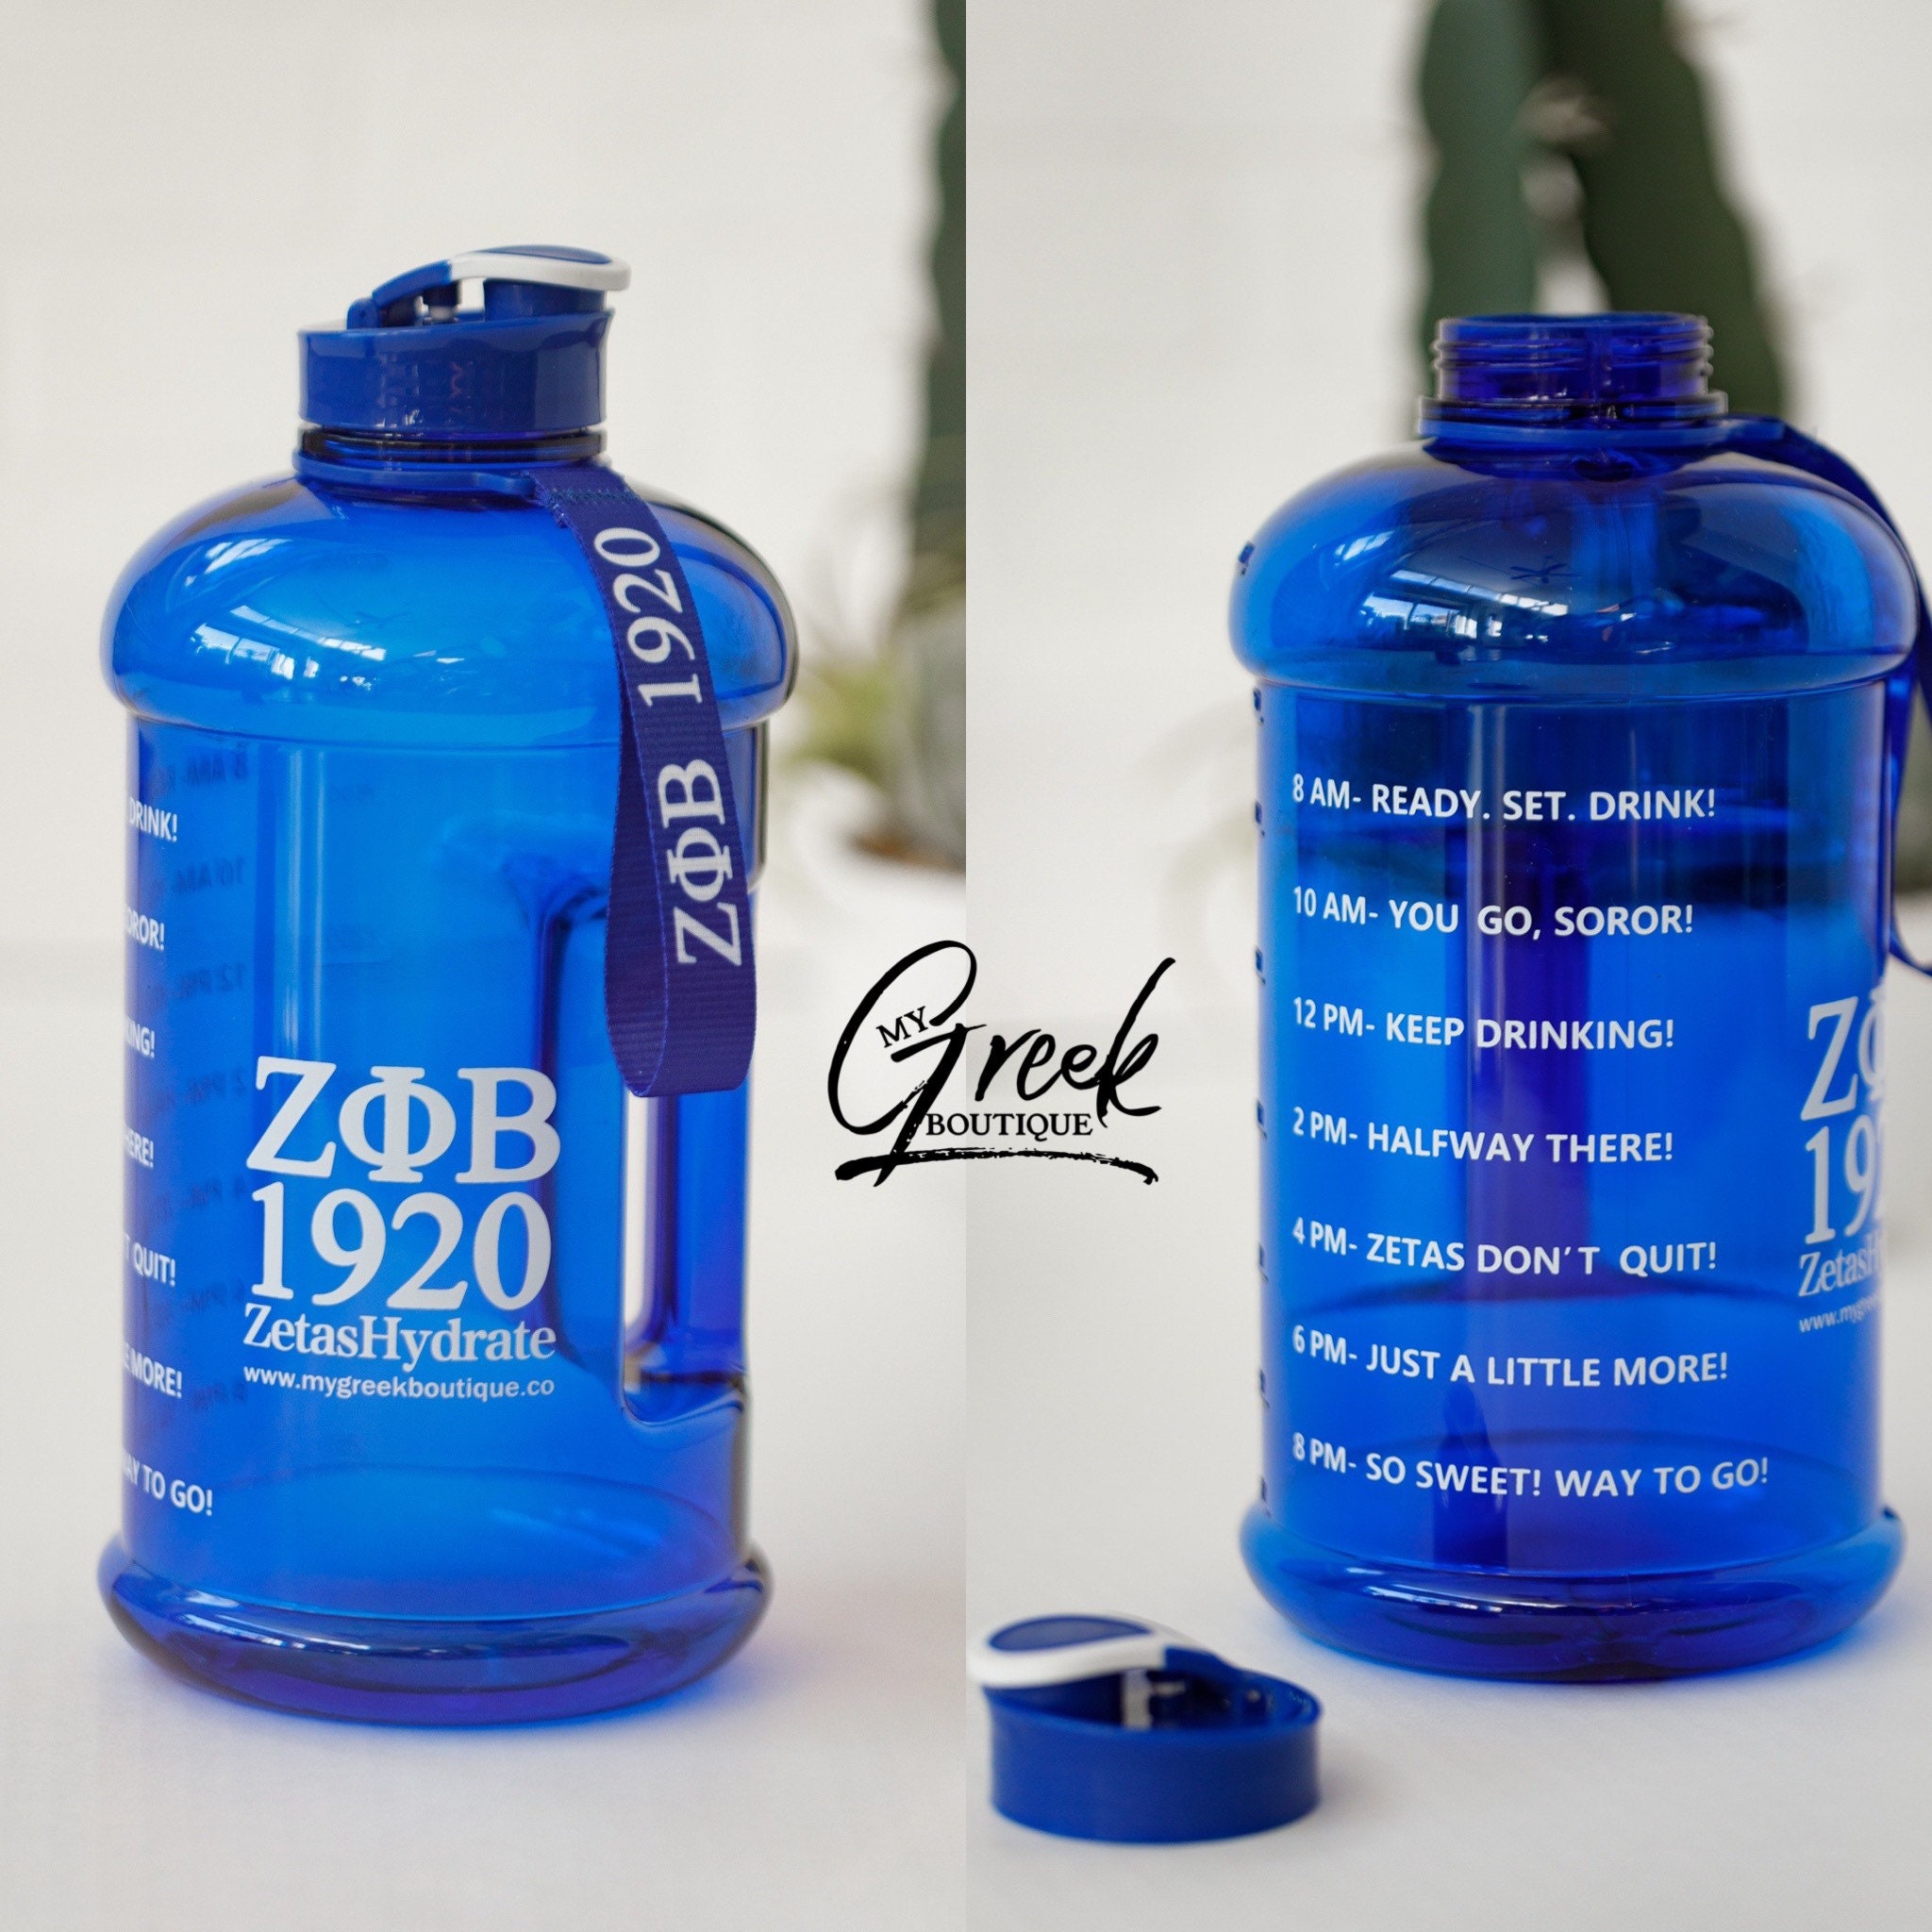 Porpoise- Bulk Custom Printed 24oz Water Bottle with Flip Lid